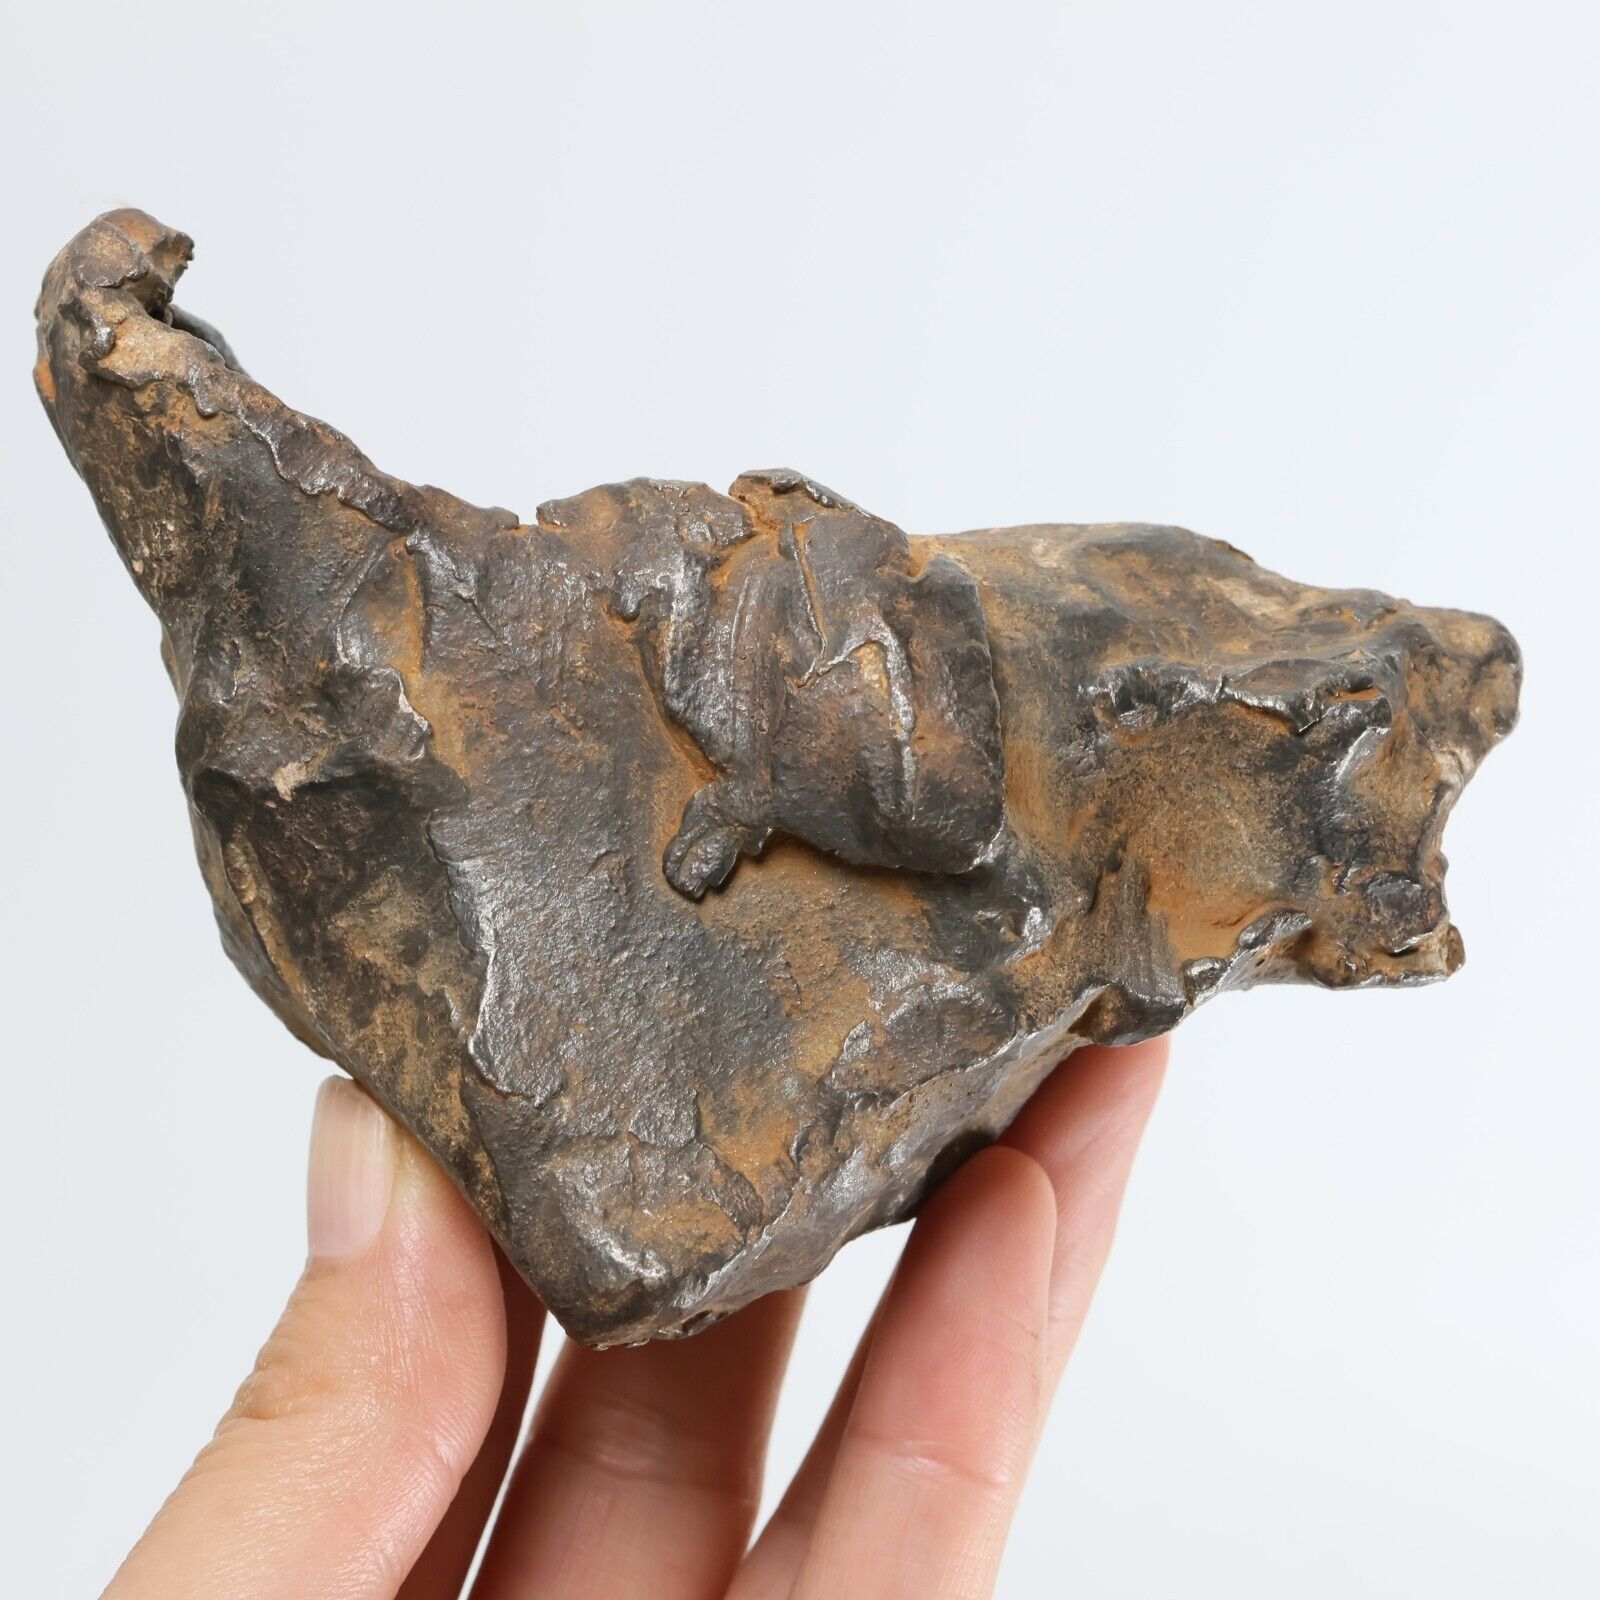 711g Gebel Kamil iron meteorite, Egypt, Space Gift, meteorite, specimen R1724